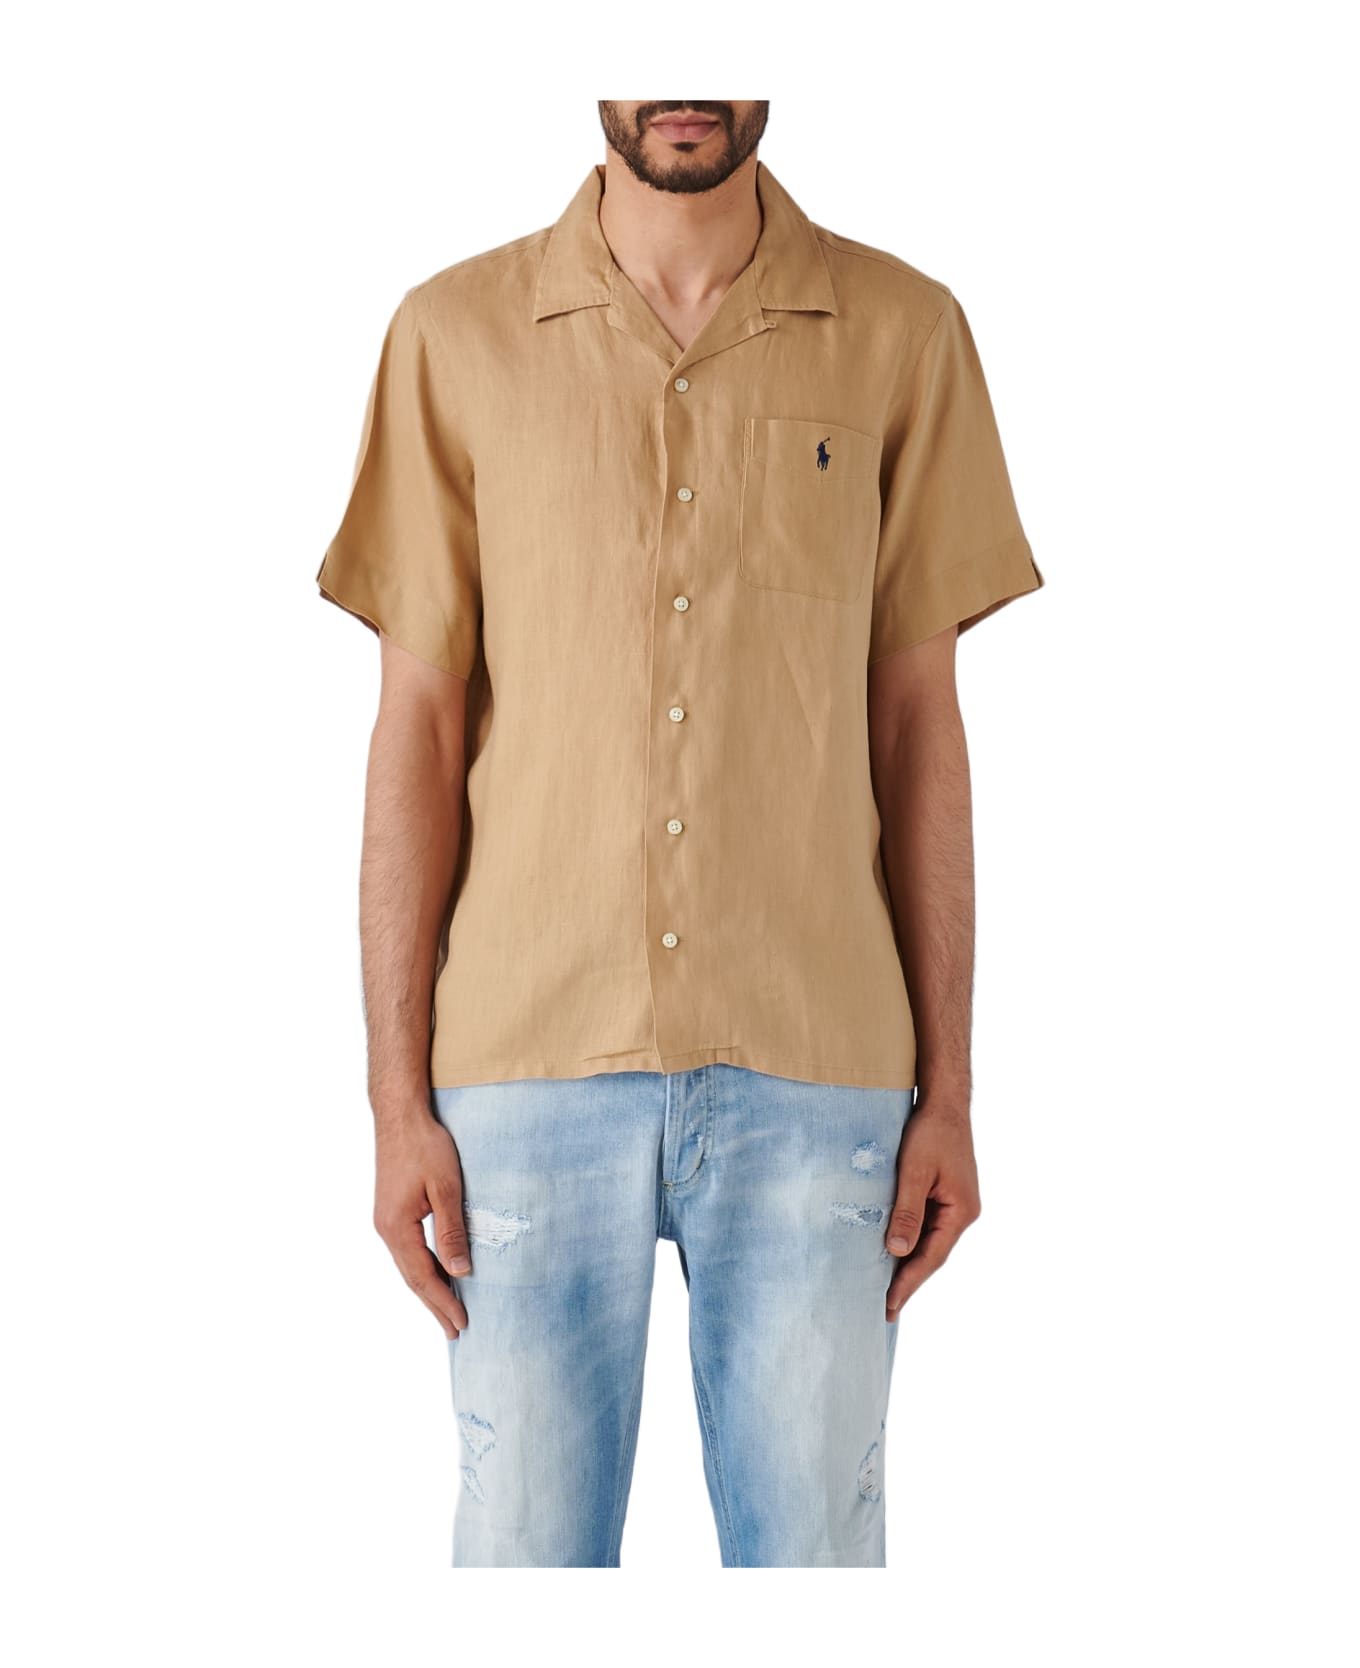 Polo Ralph Lauren Long Sleeve Sport Shirt Shirt - KAKI